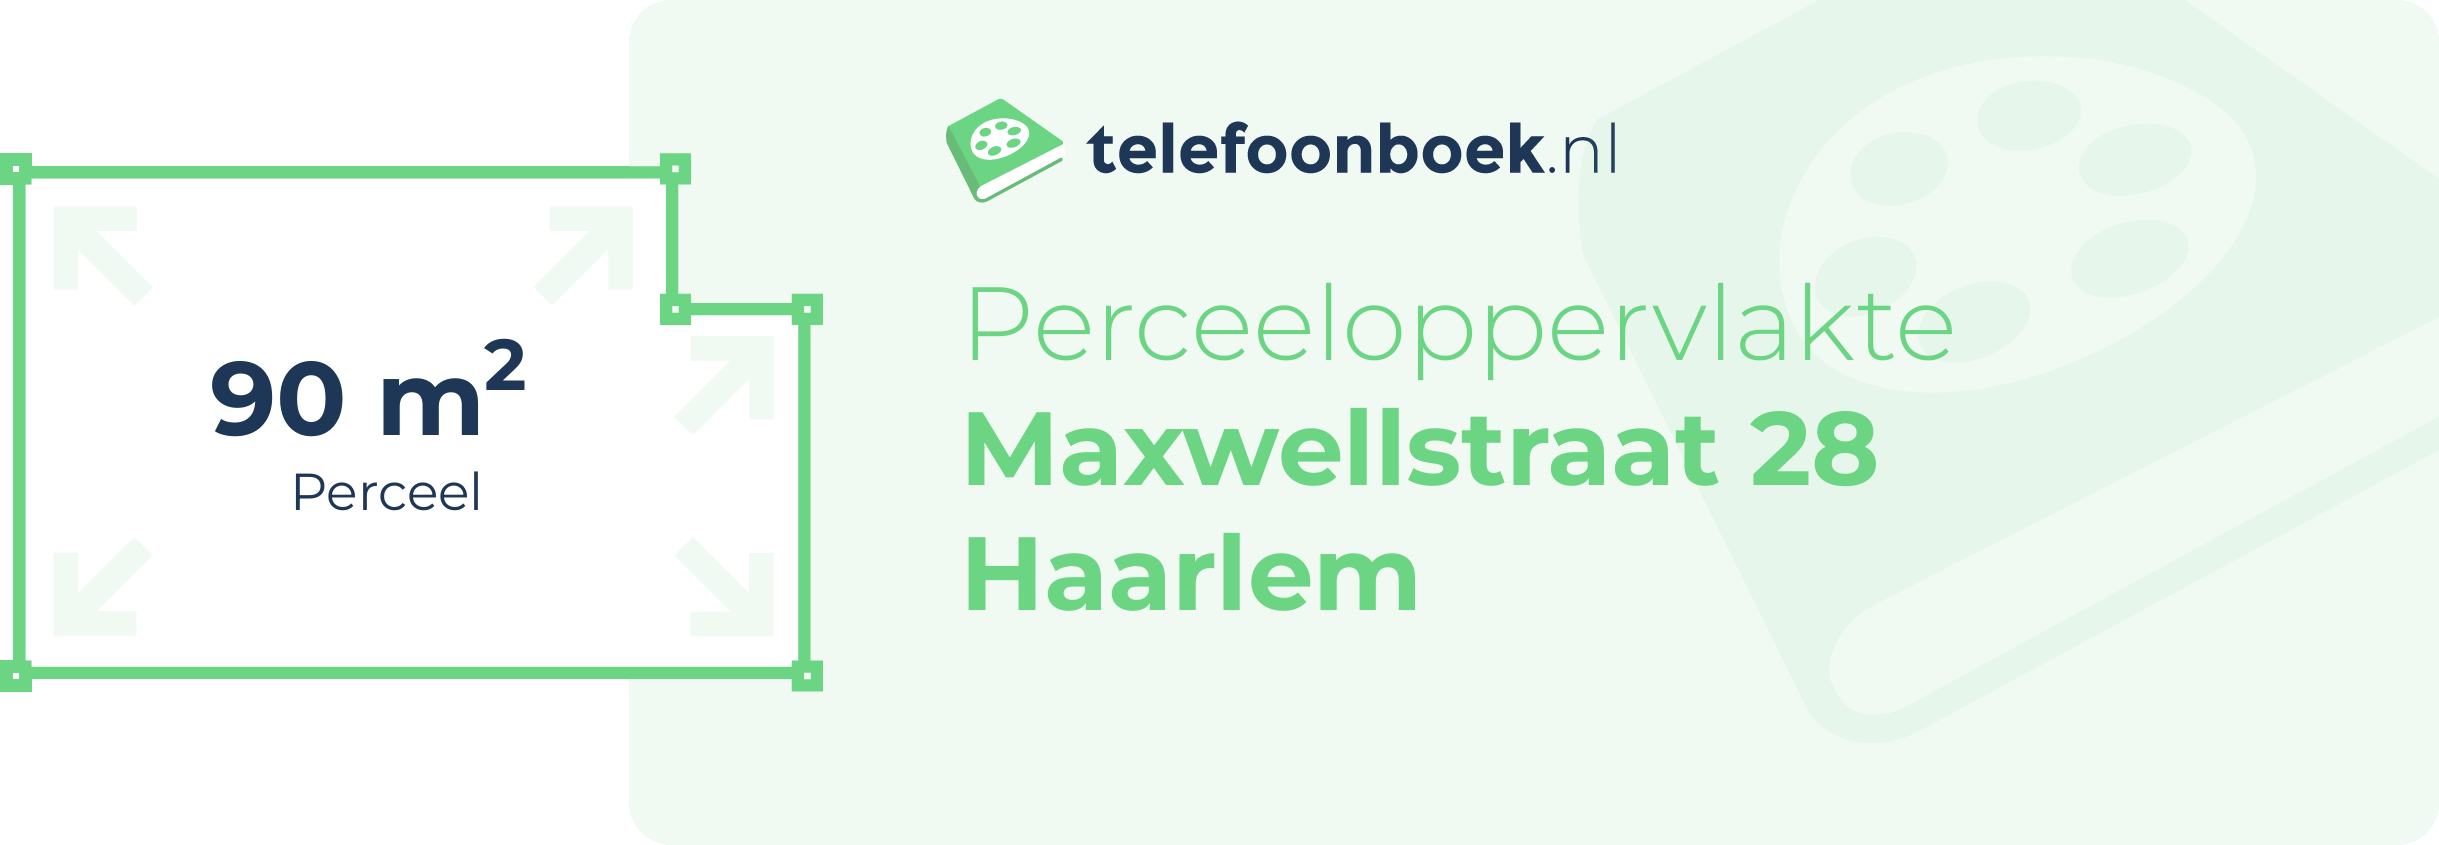 Perceeloppervlakte Maxwellstraat 28 Haarlem